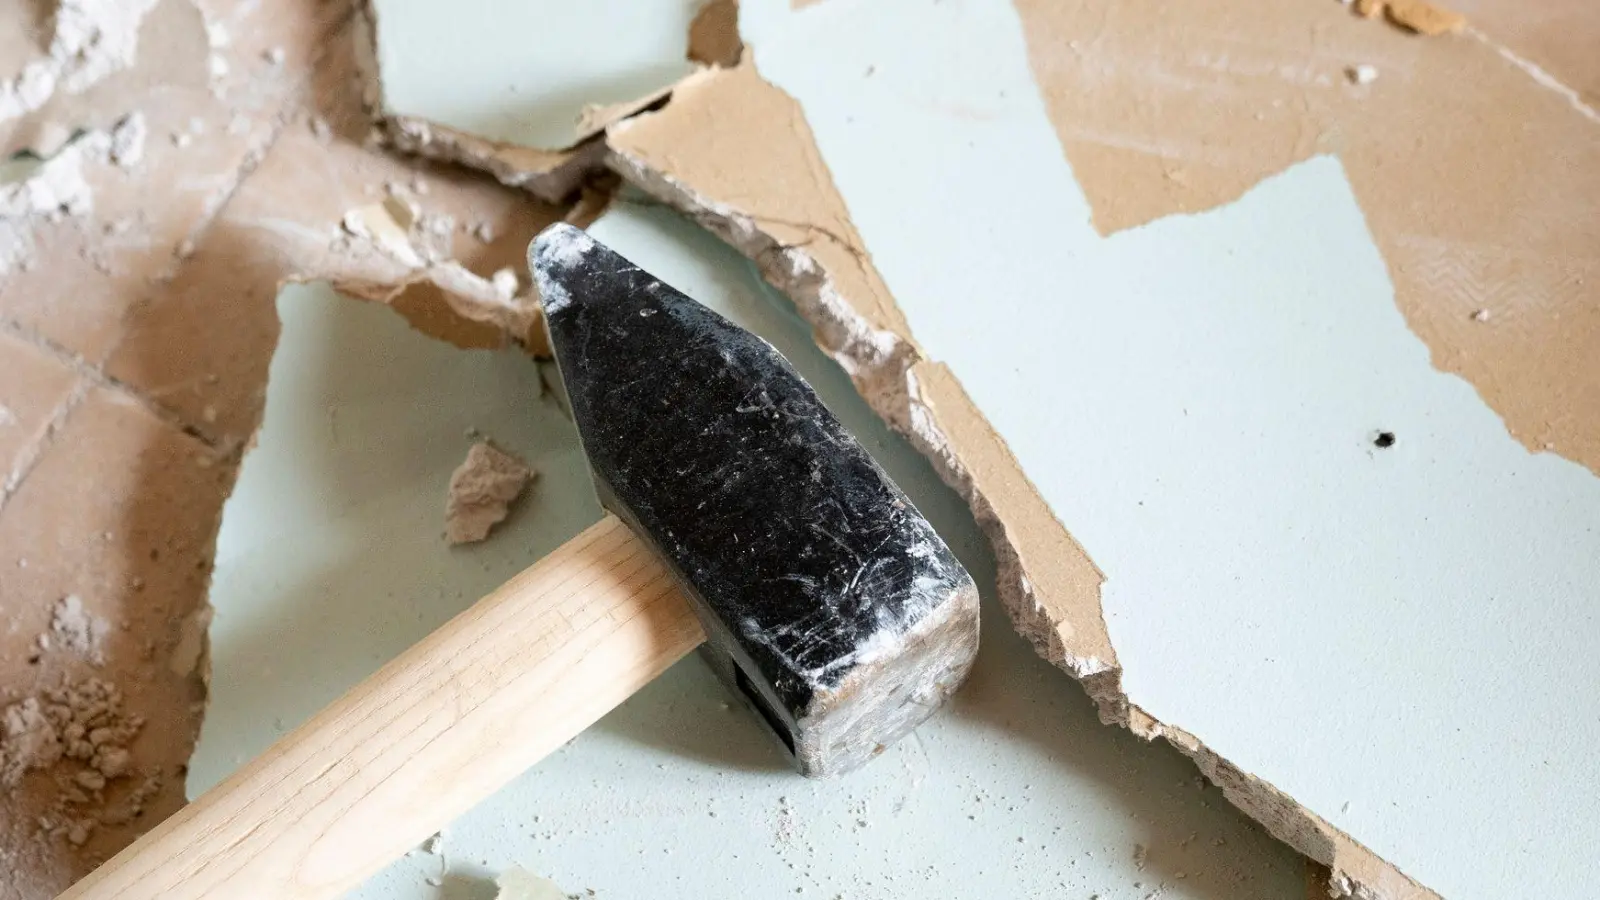 Nicht voreilig zum Vorschlaghammer greifen: Auch dünnere Wände können eine wesentliche tragende Funktion im Haus haben. (Foto: Florian Schuh/dpa-tmn/dpa)